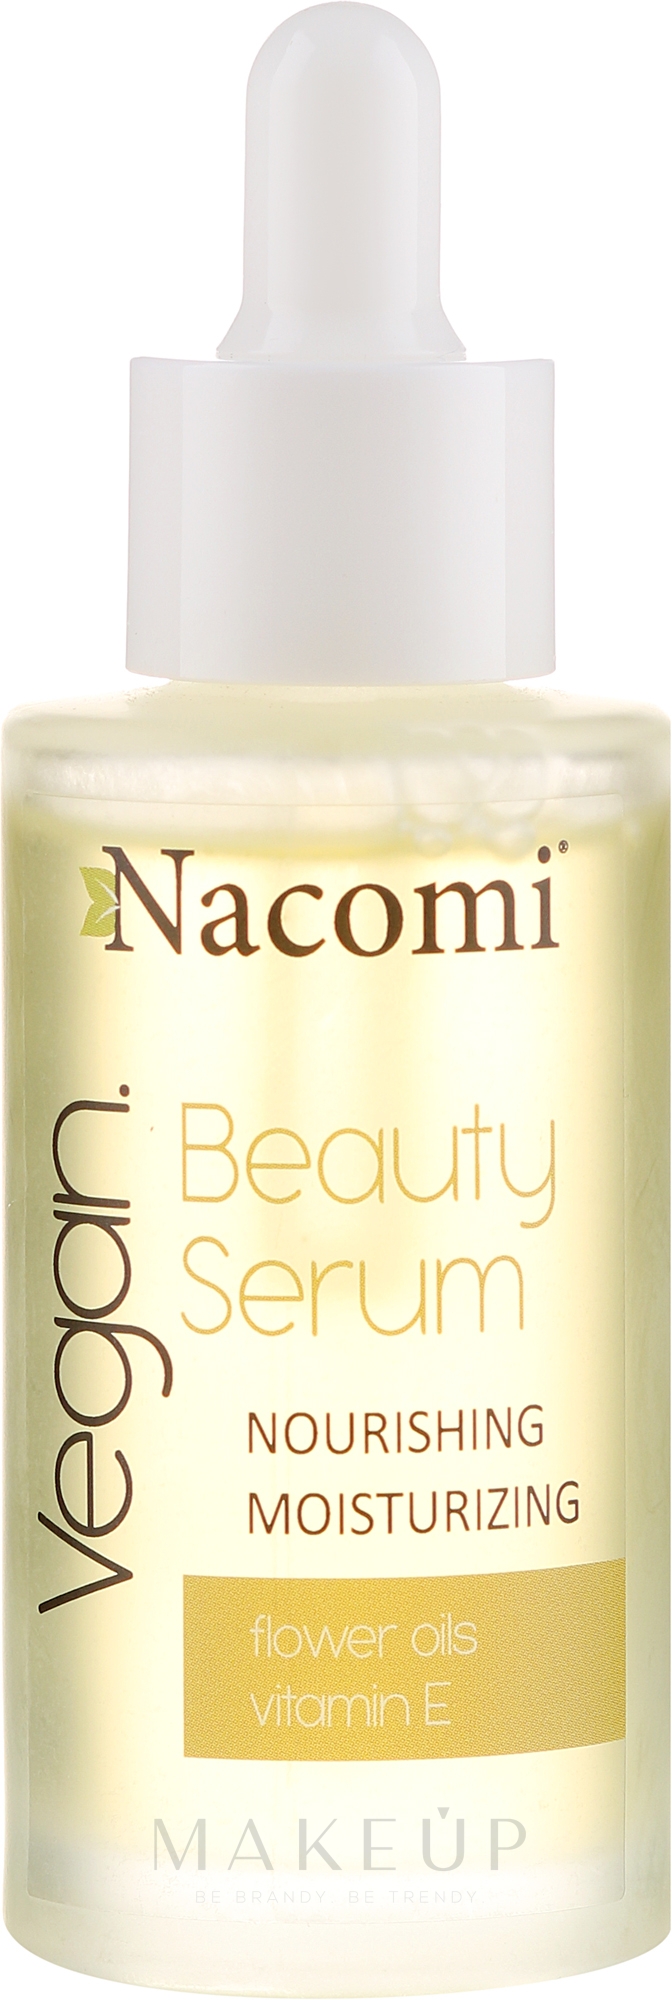 Nährendes und feuchtigkeitsspendendes Gesichtsserum mit Vitamin E - Nacomi Beauty Serum Nourishing & Moisturizing Serum — Foto 40 ml